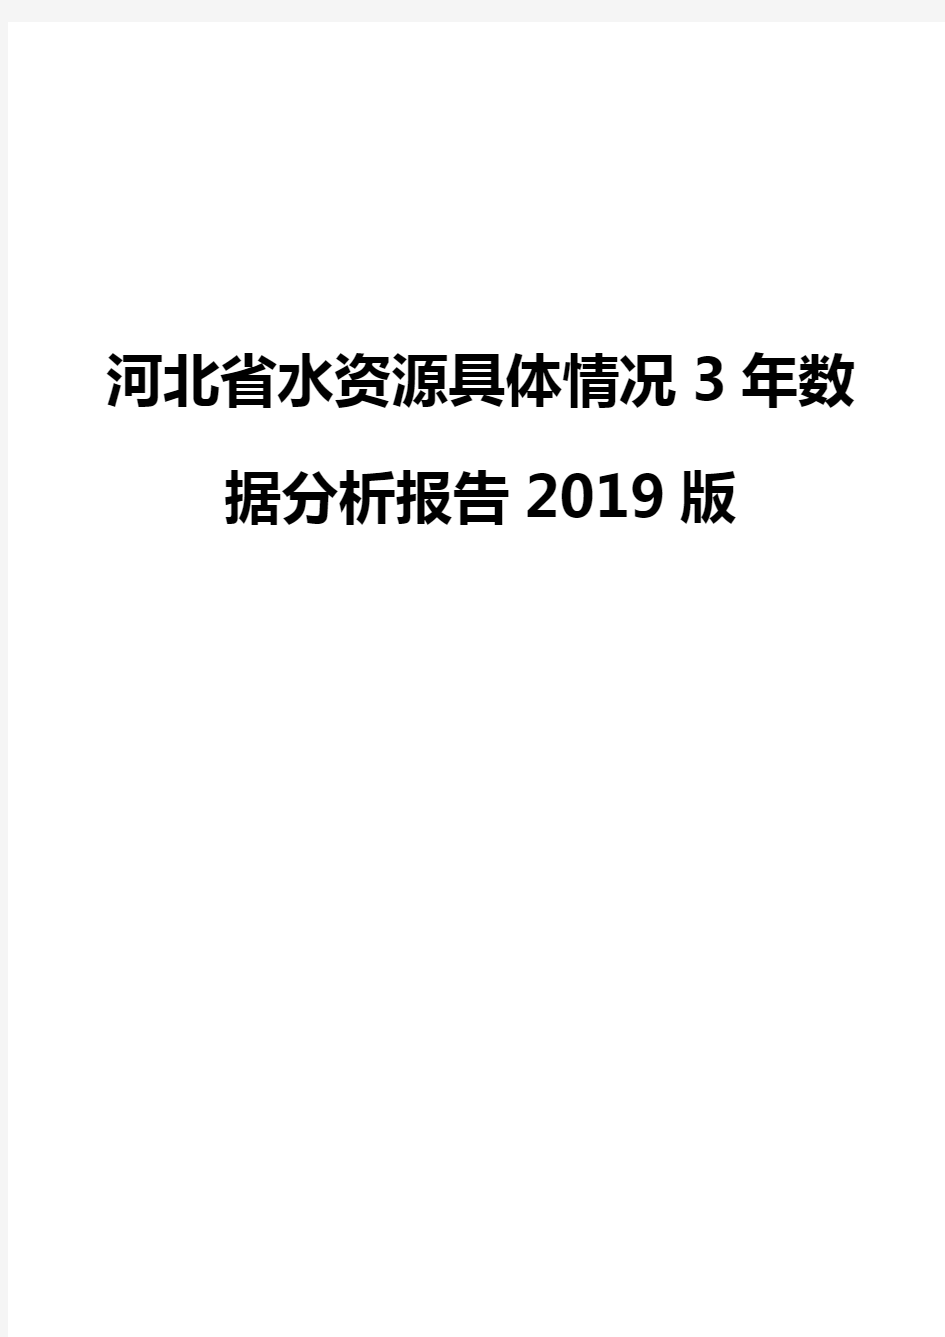 河北省水资源具体情况3年数据分析报告2019版